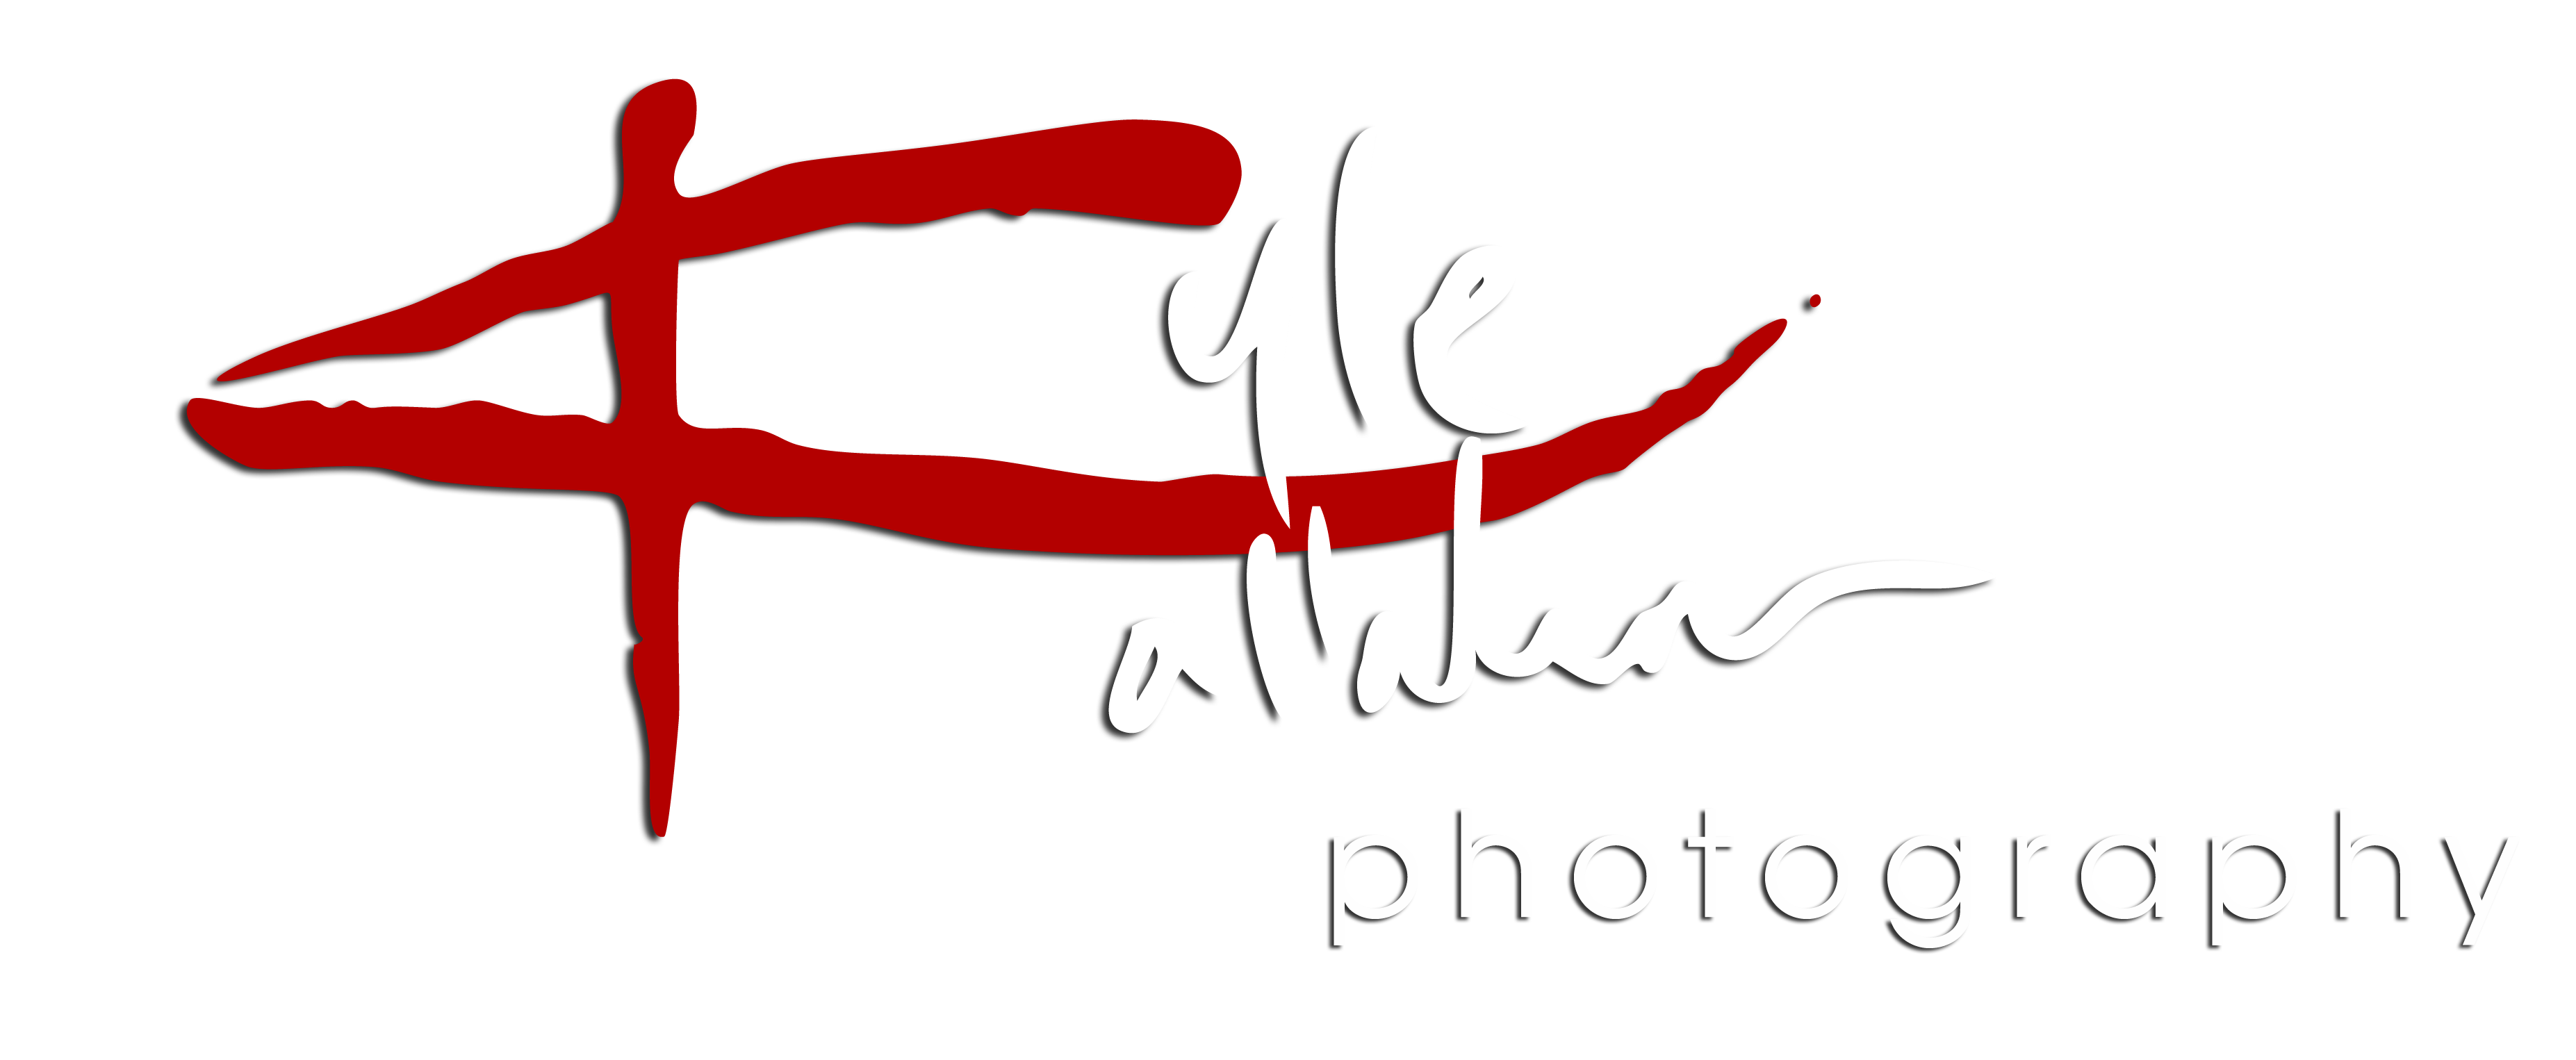 Personalized Photographer Logo, Custom Camera Logo, Photography Logo  Design, Photo Logo, Photo Signature, Transparent Photo Logo - Etsy